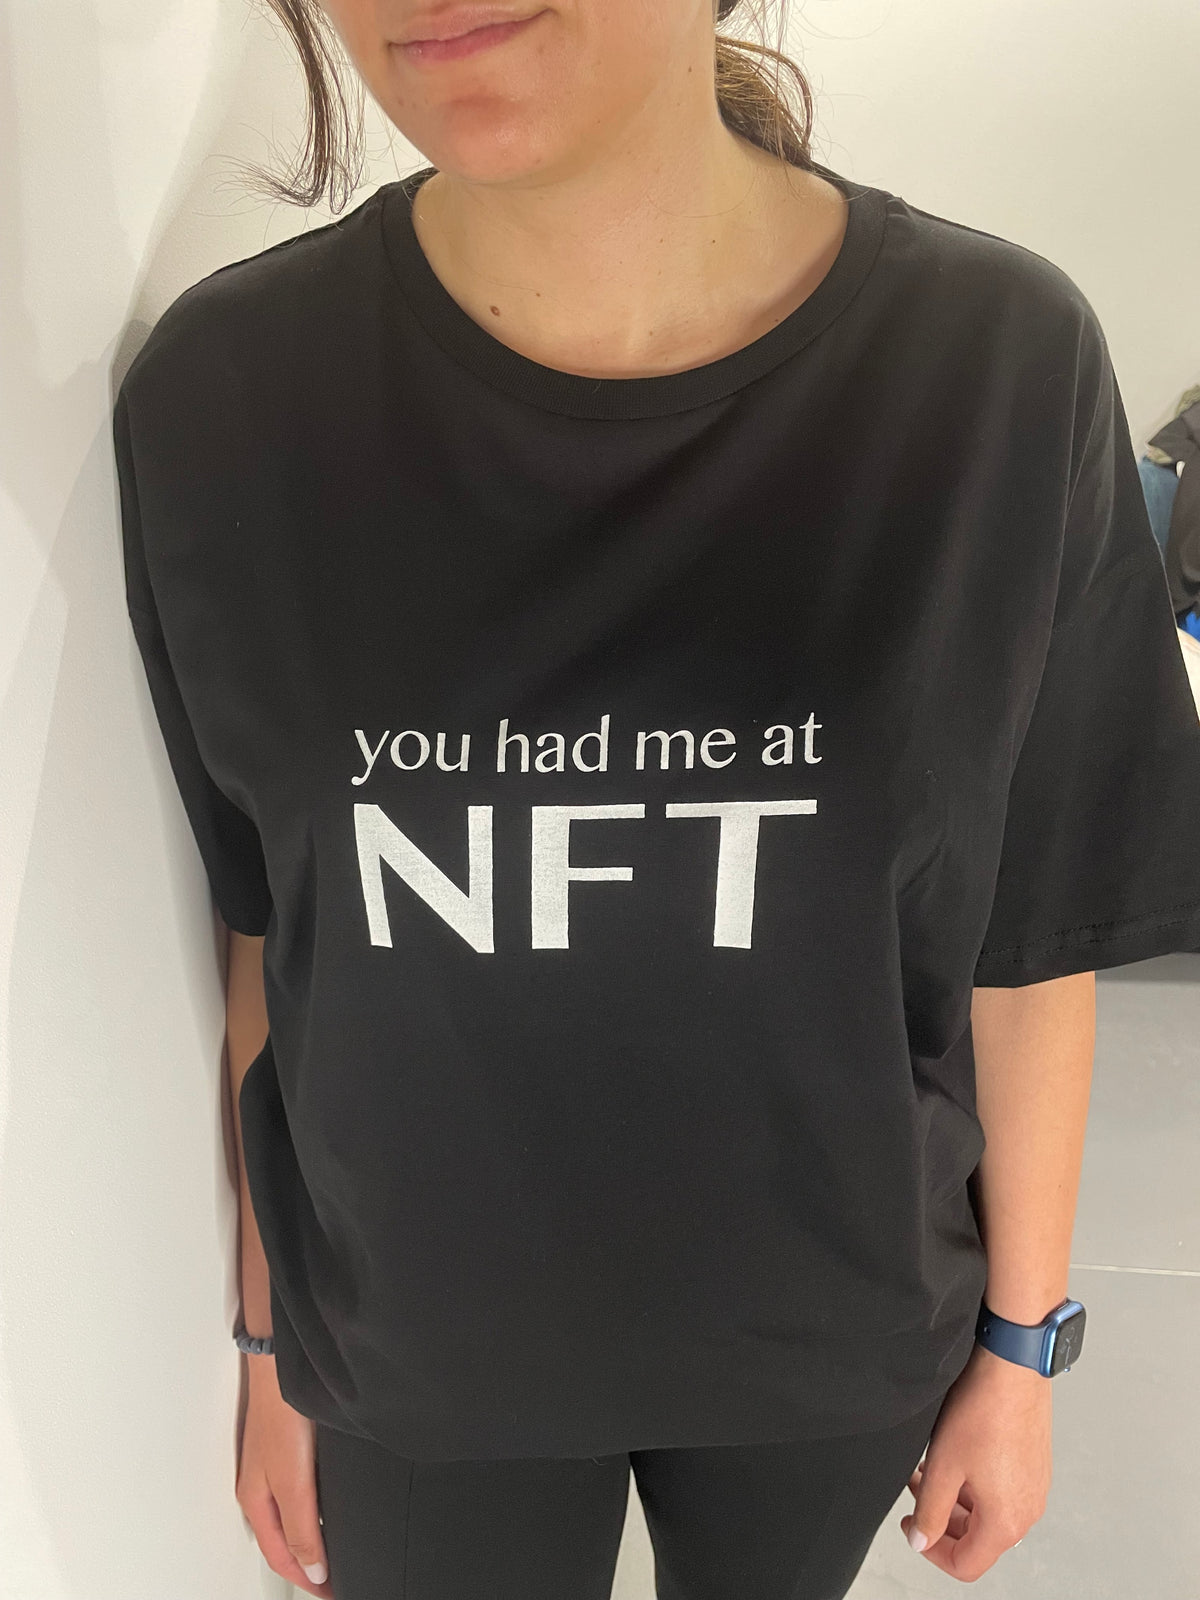 The NFT T-Shirt